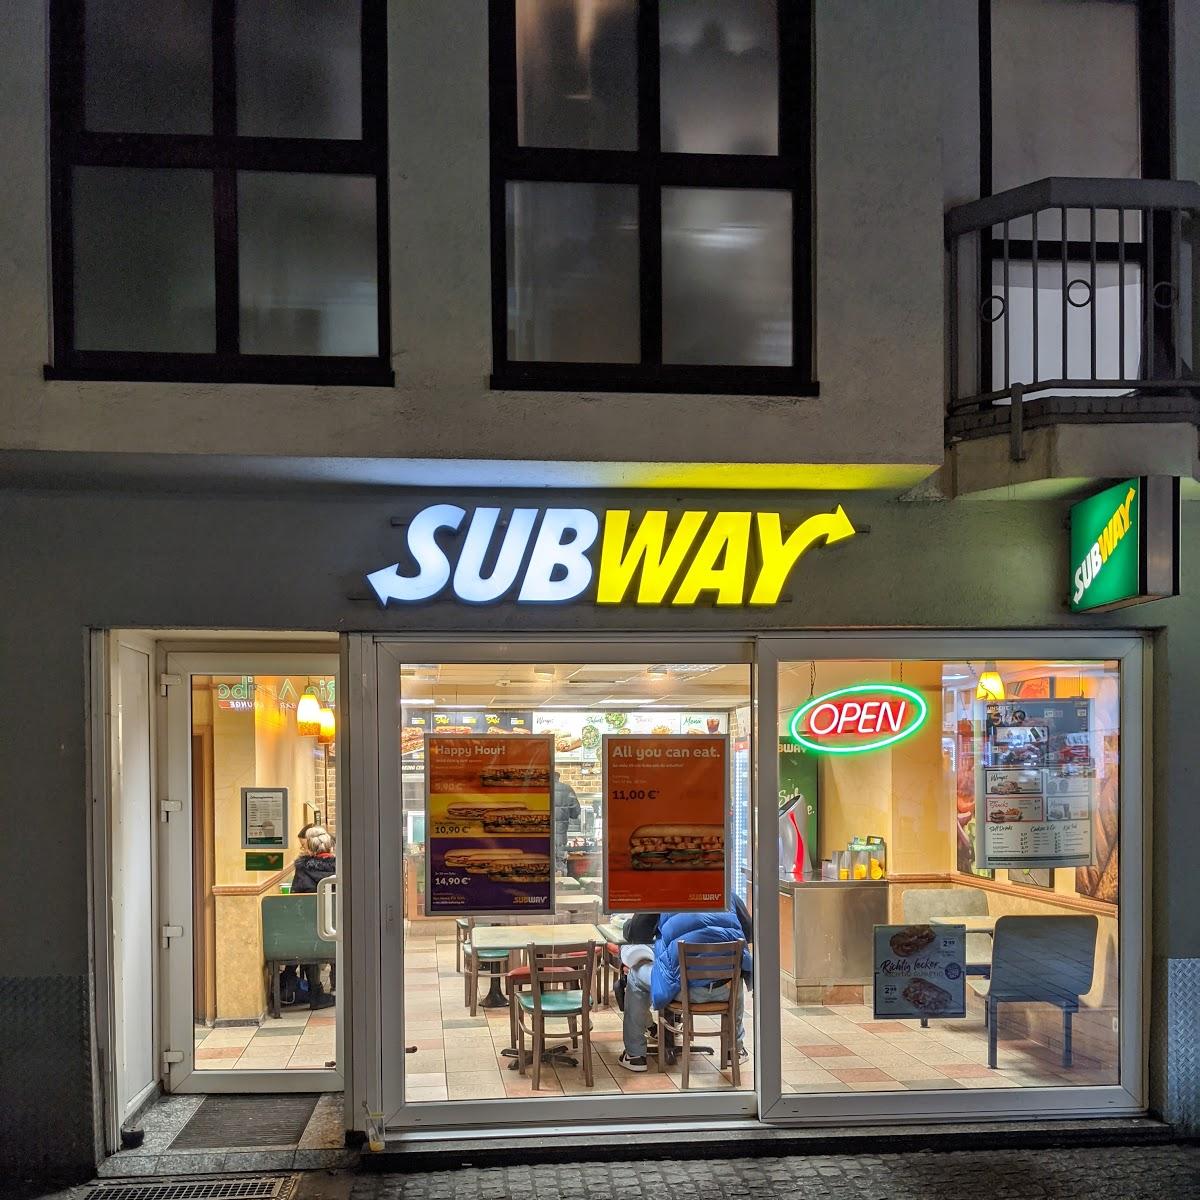 Restaurant "Subway" in Düsseldorf